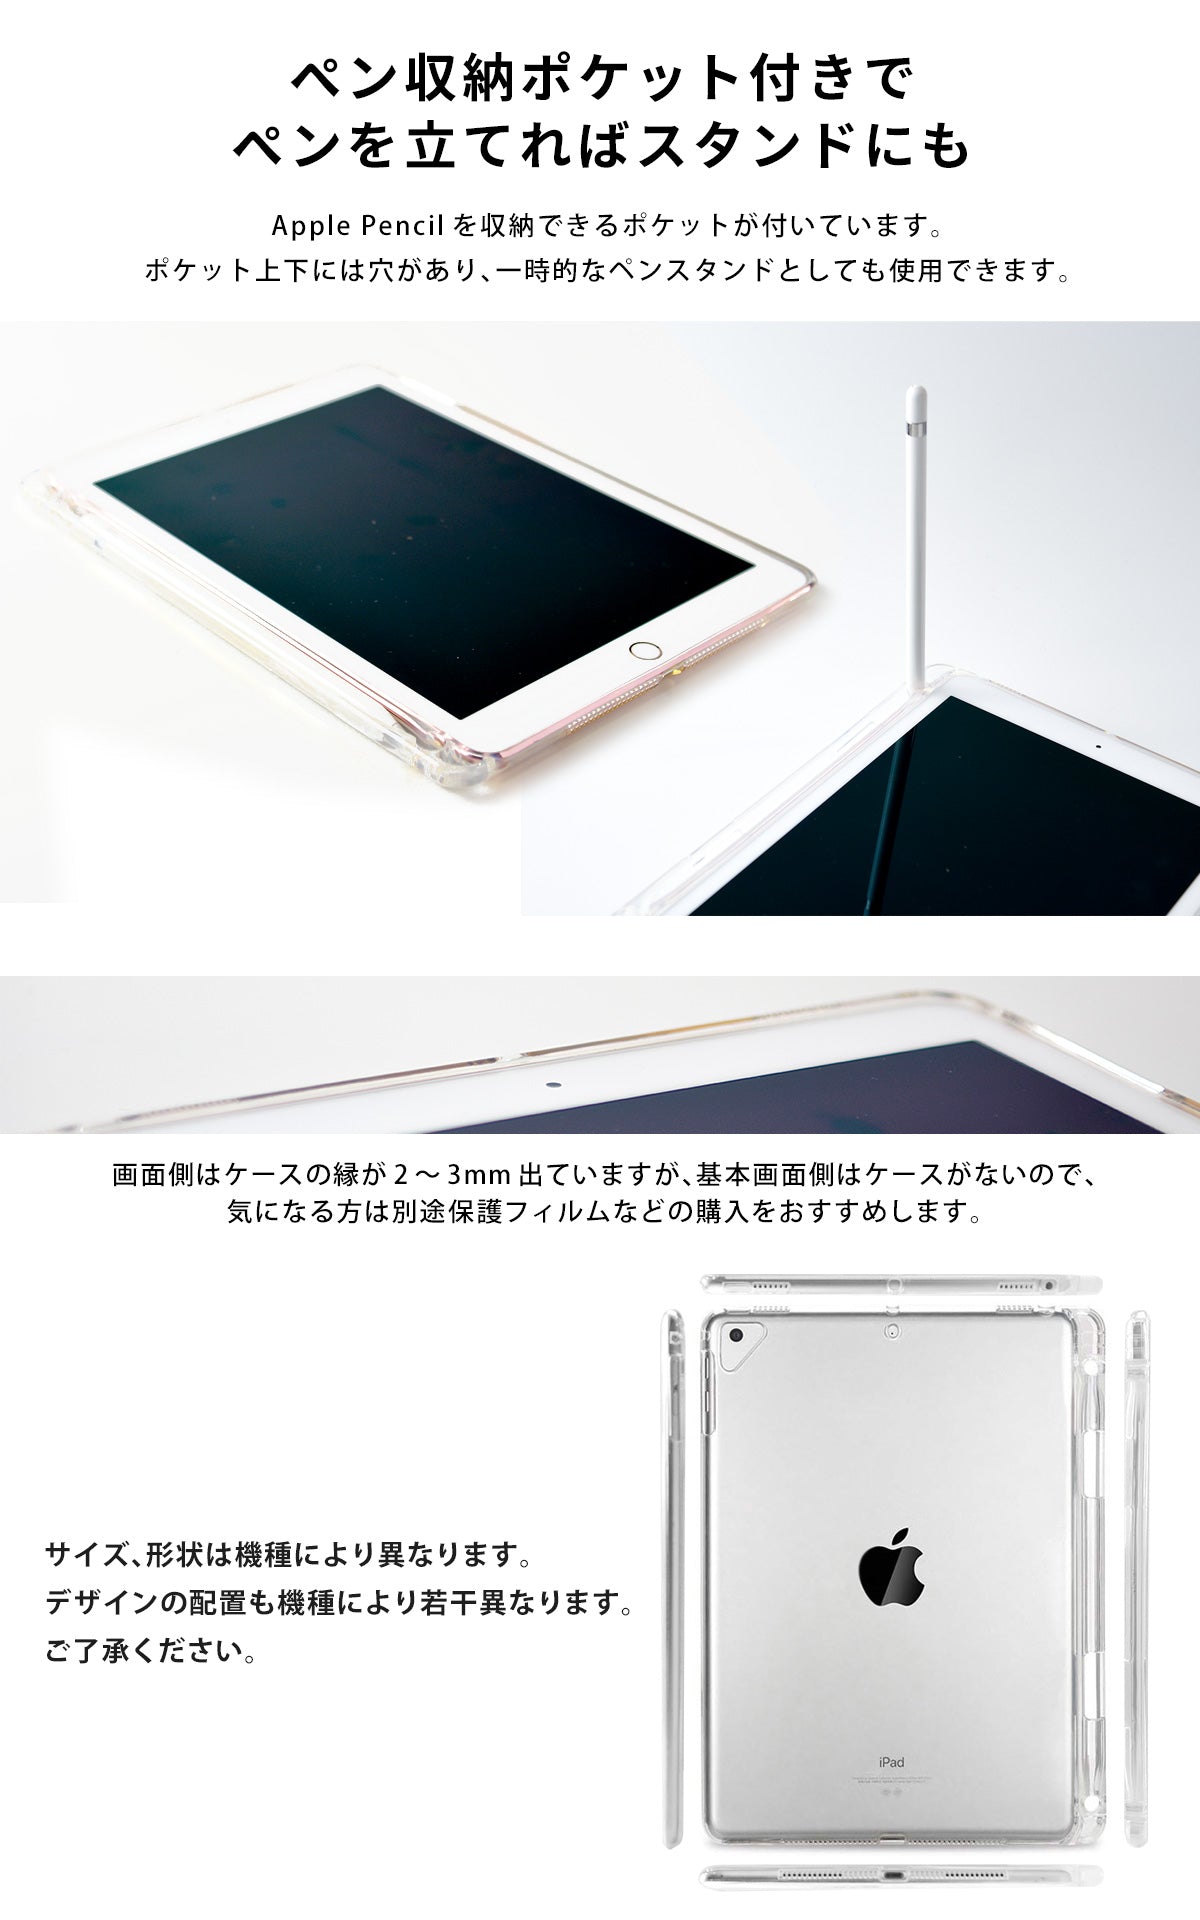 iPadクリアケースはペン収納ポケット付き、ペンを立てればスタンドにもなります